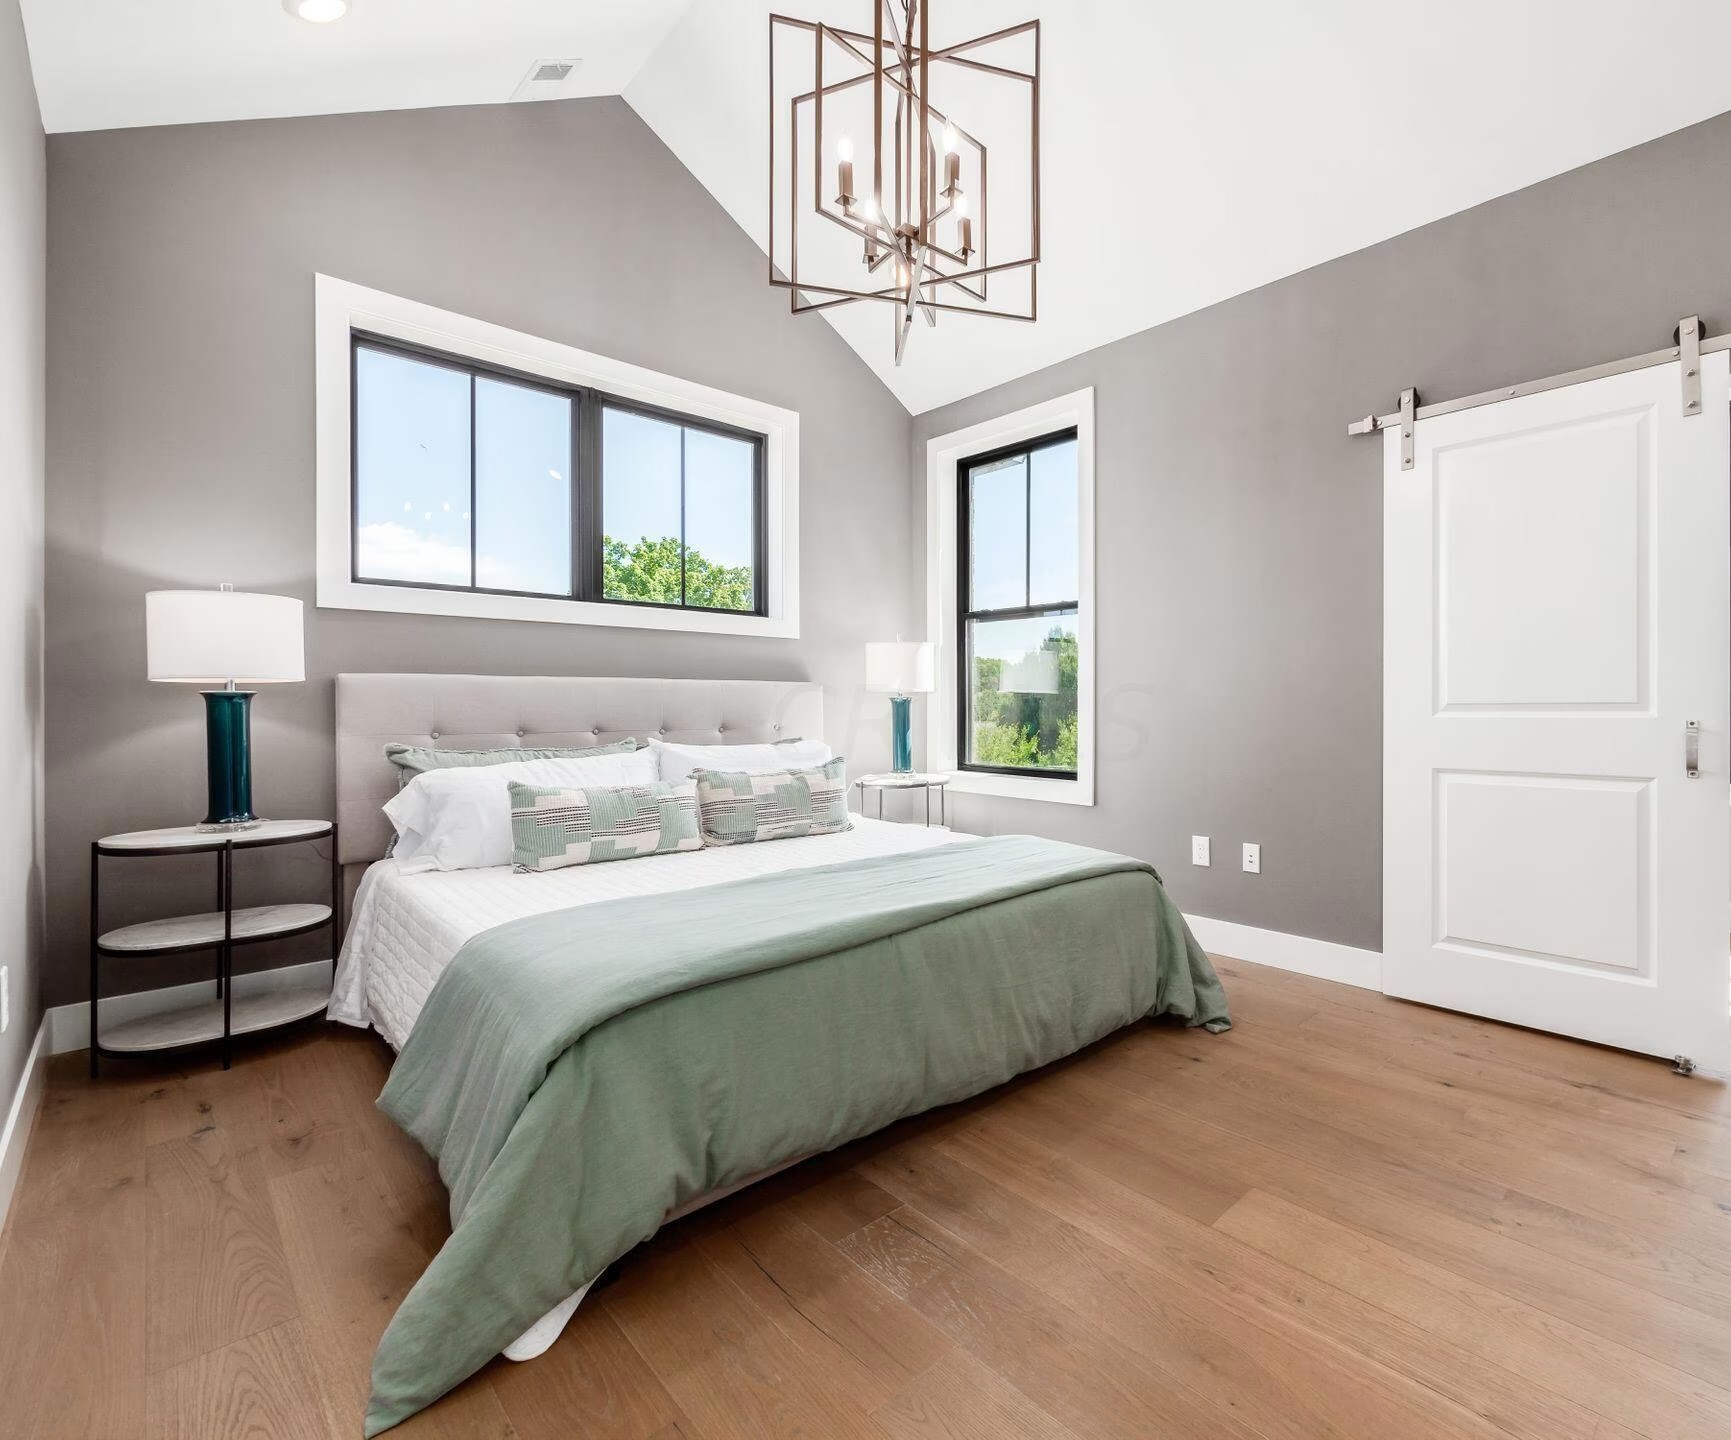 3d-interior-bedroom-design-rendering-condominium-columbus-ohio